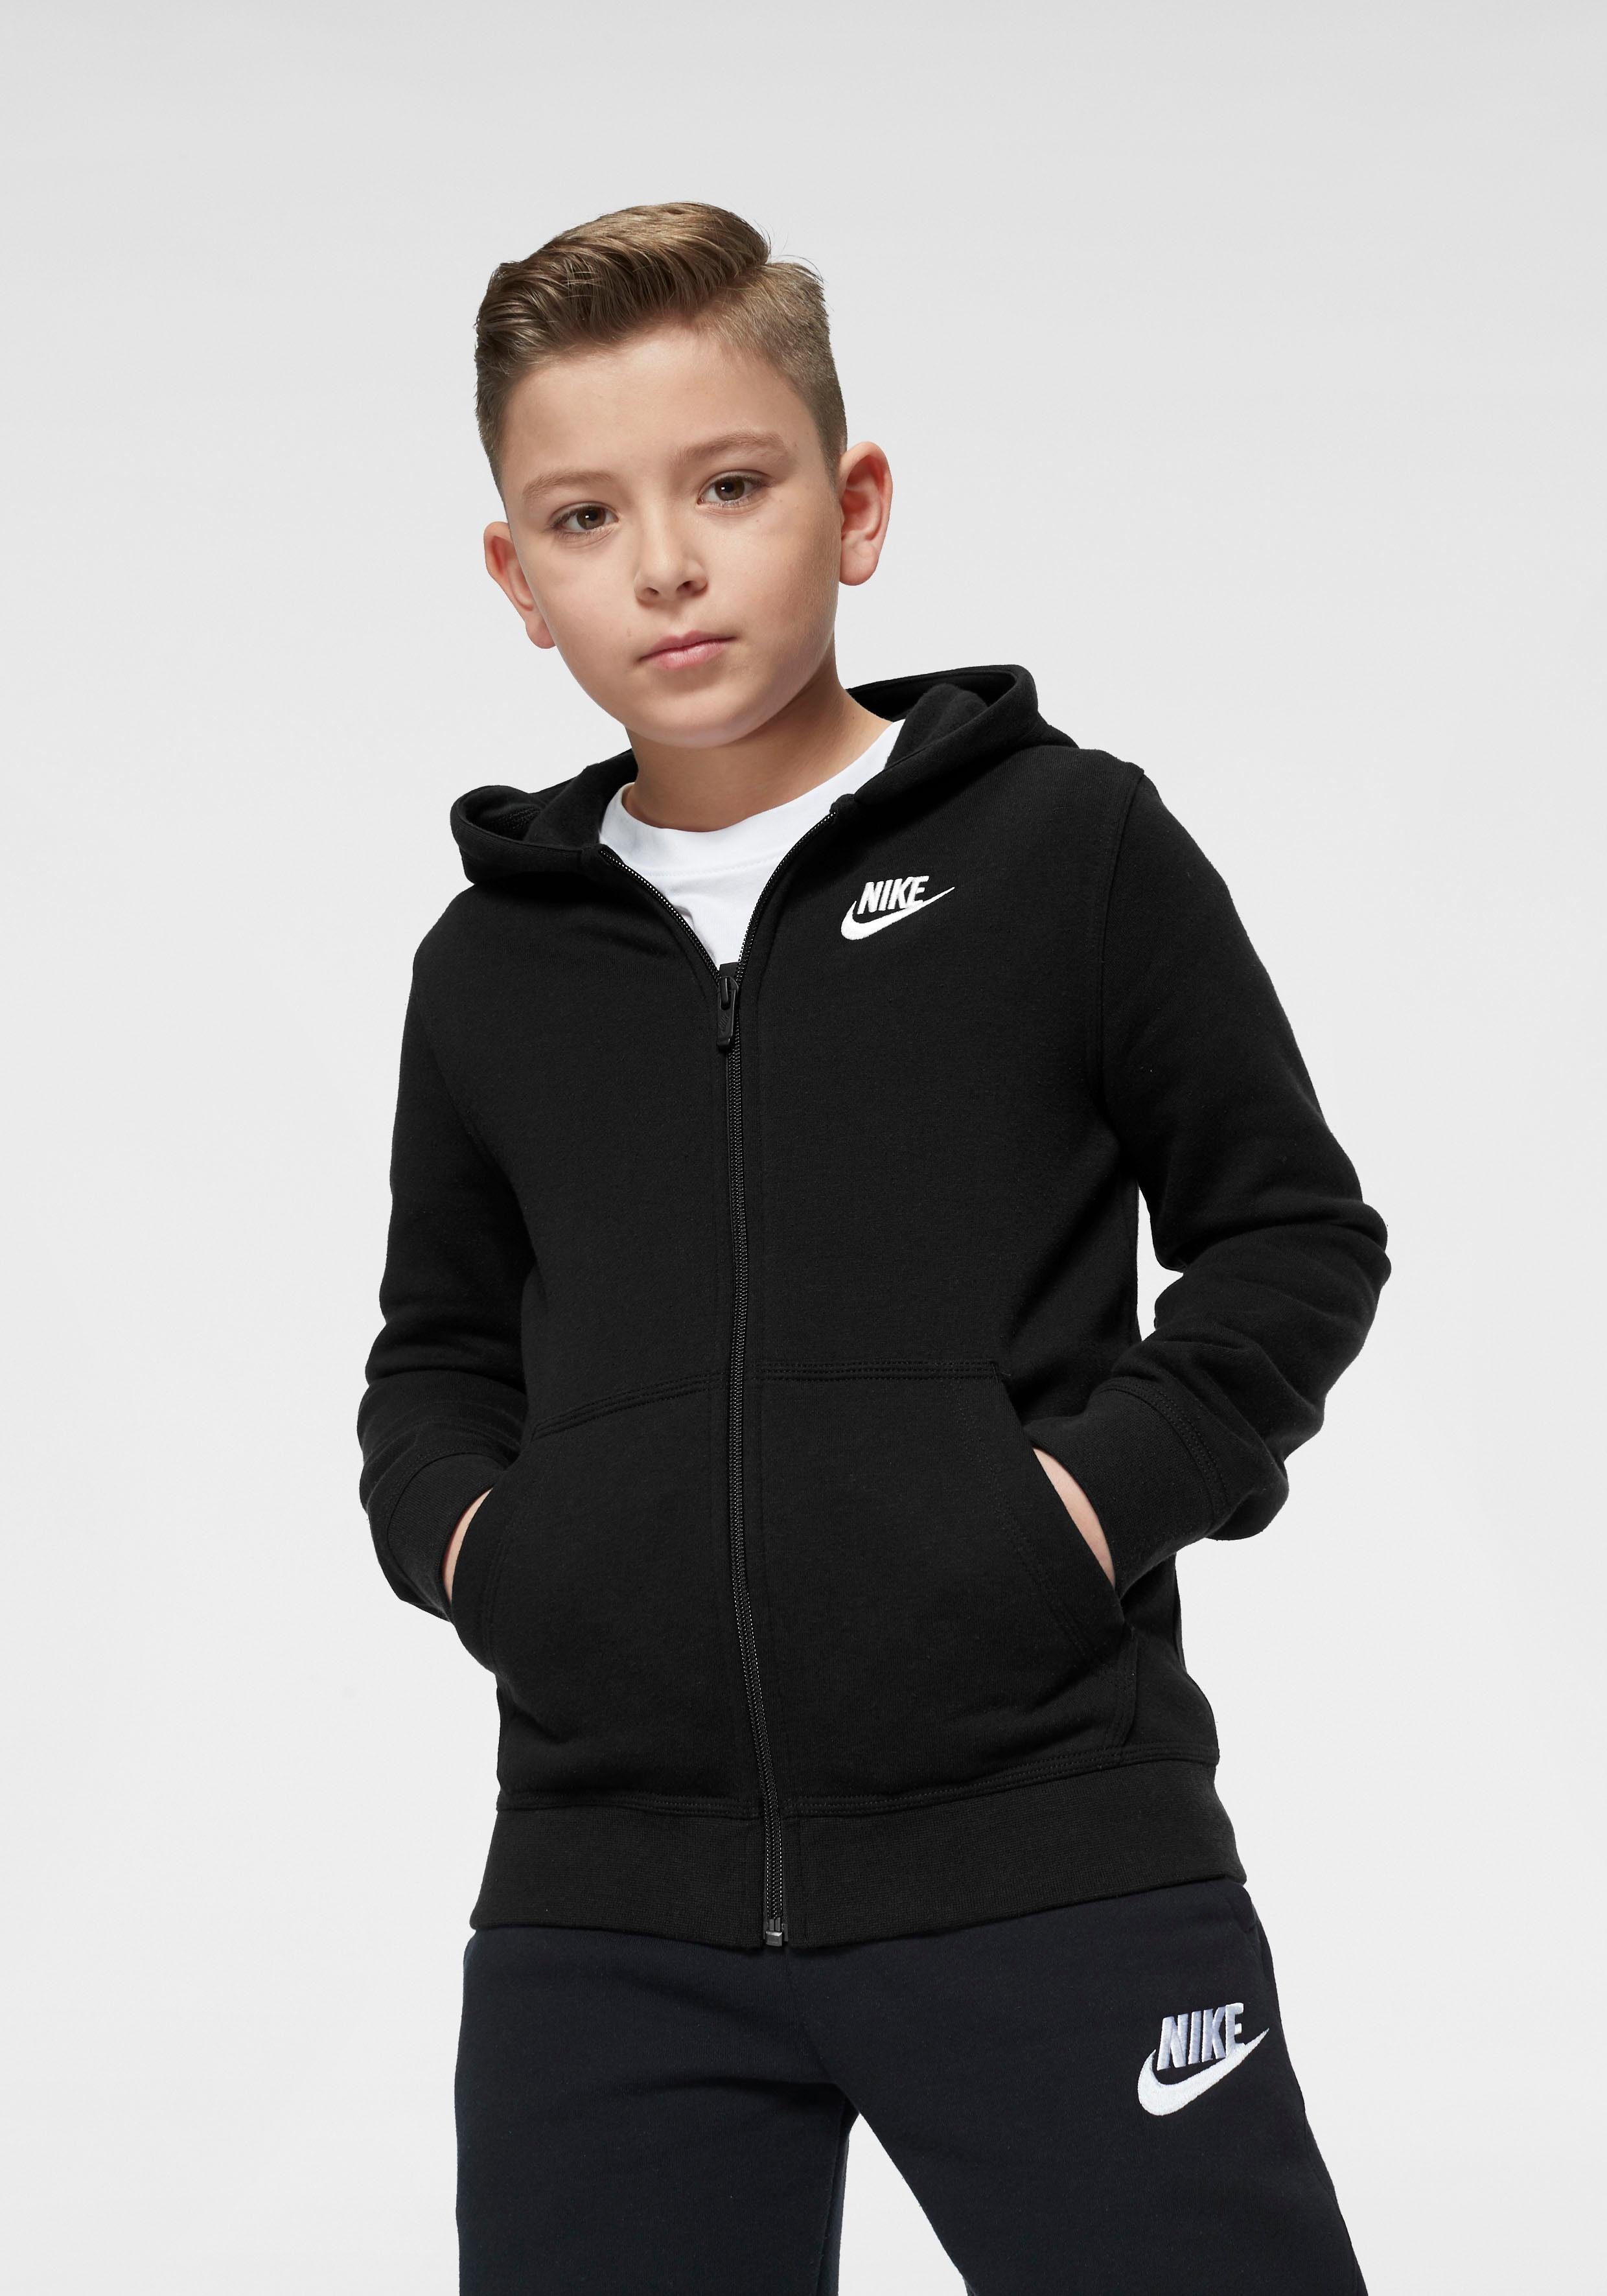 Nike Jungen Mode online kaufen | OTTO